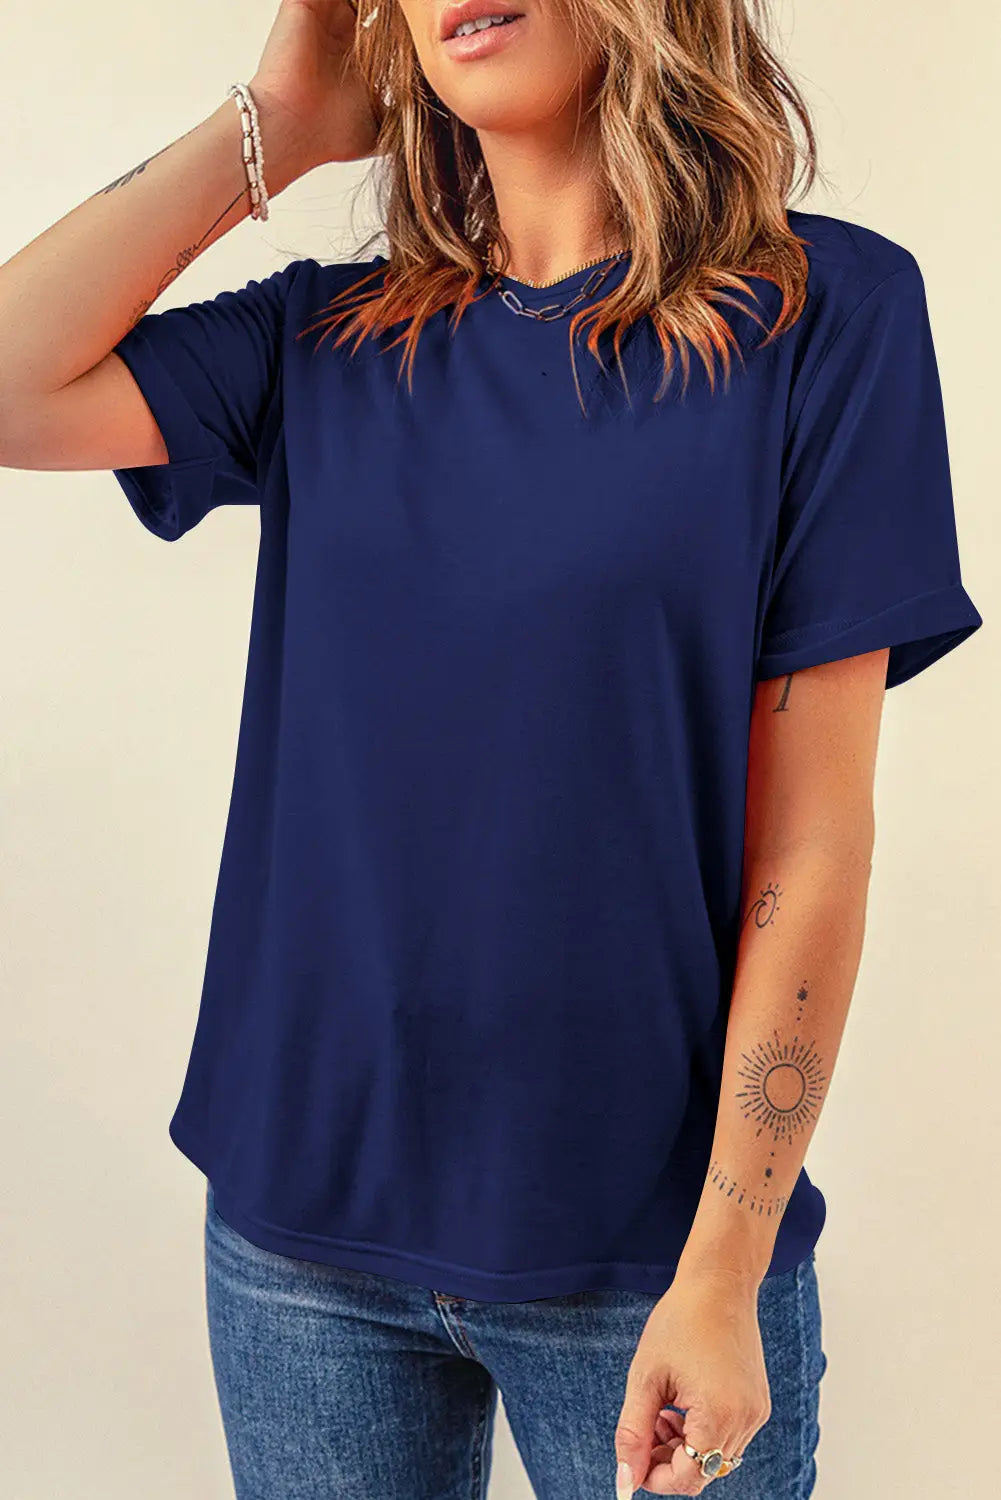 Khaki casual plain crew neck tee - blue / s / 62% polyester + 32% cotton + 6% elastane - t-shirts